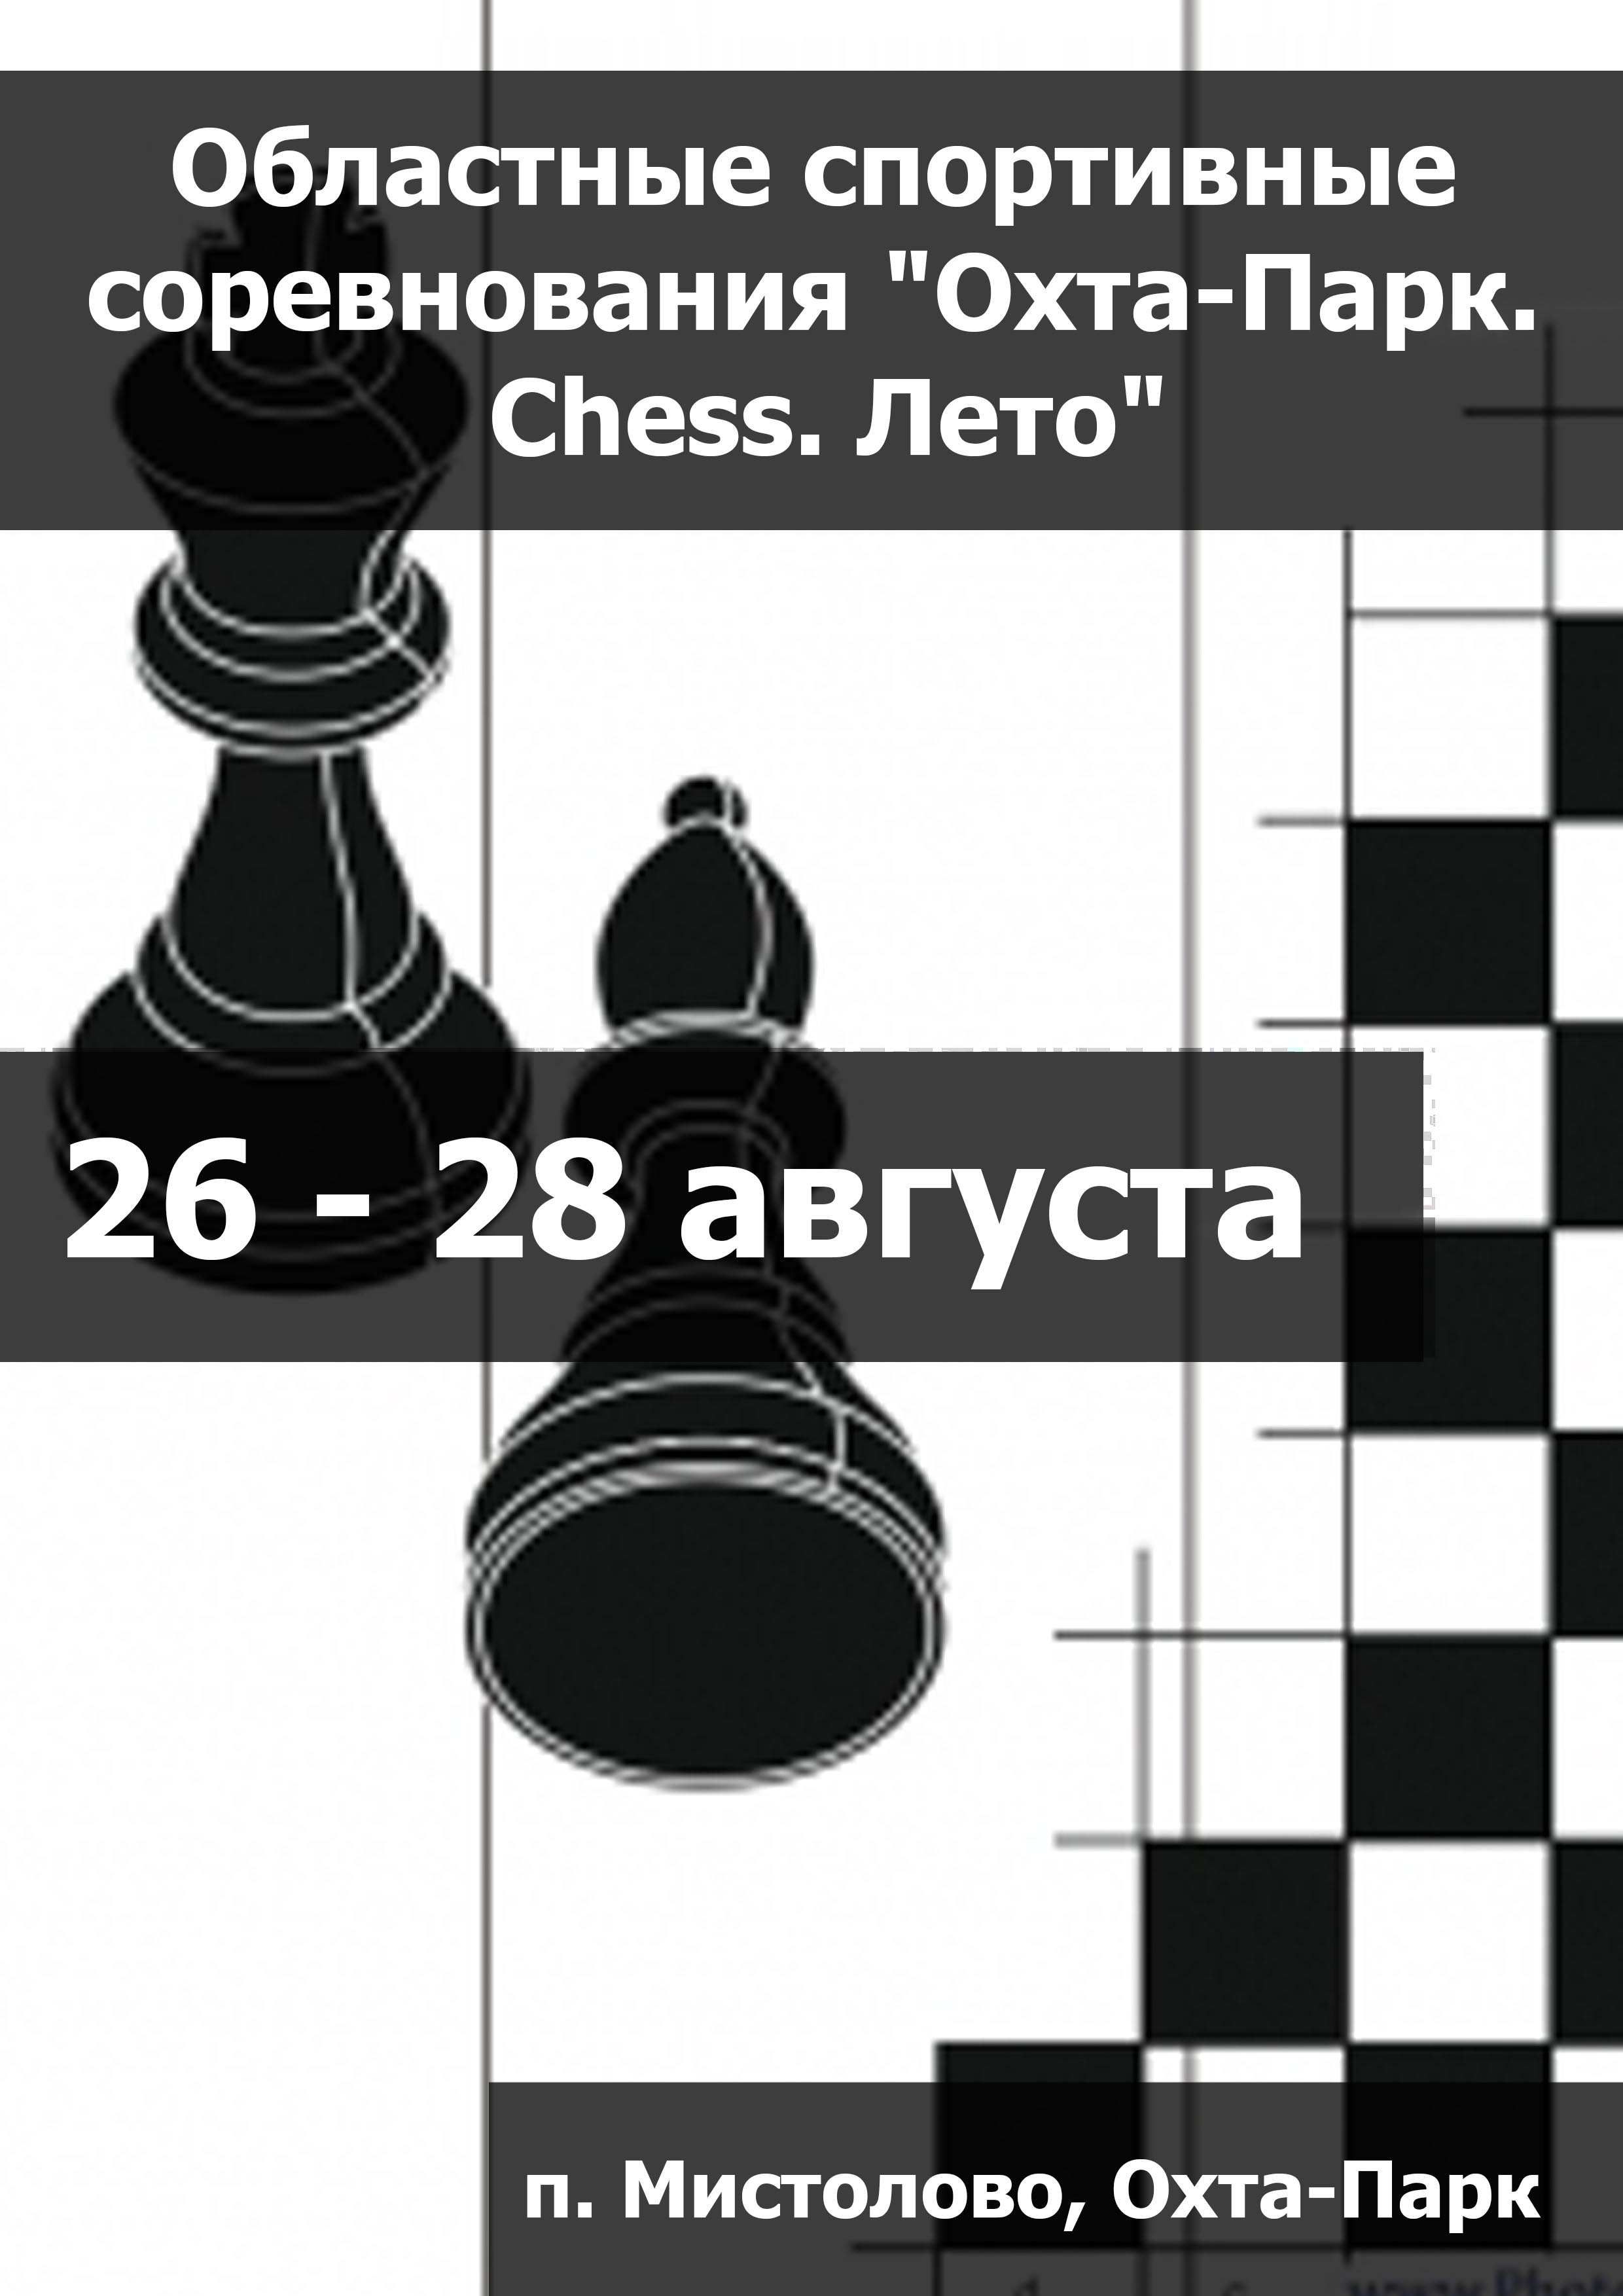 Областные спортивные соревнования "Охта-Парк. Chess. Лето" 26  अगस्ट
 2023  वर्ष
 